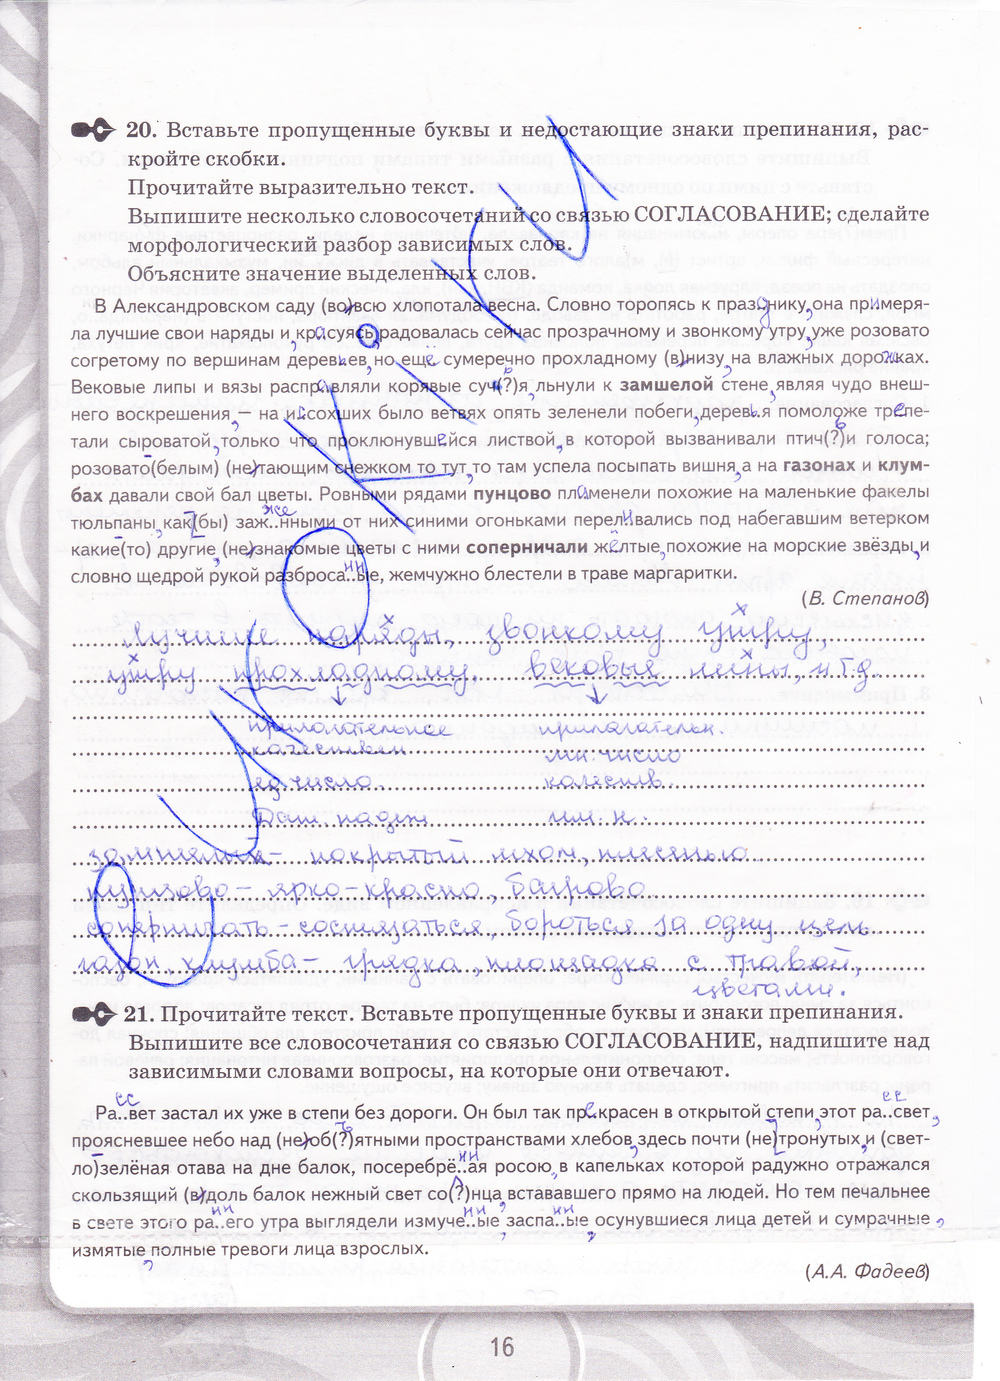 Печатная тетрадь по русскому языку 8 класс петрова